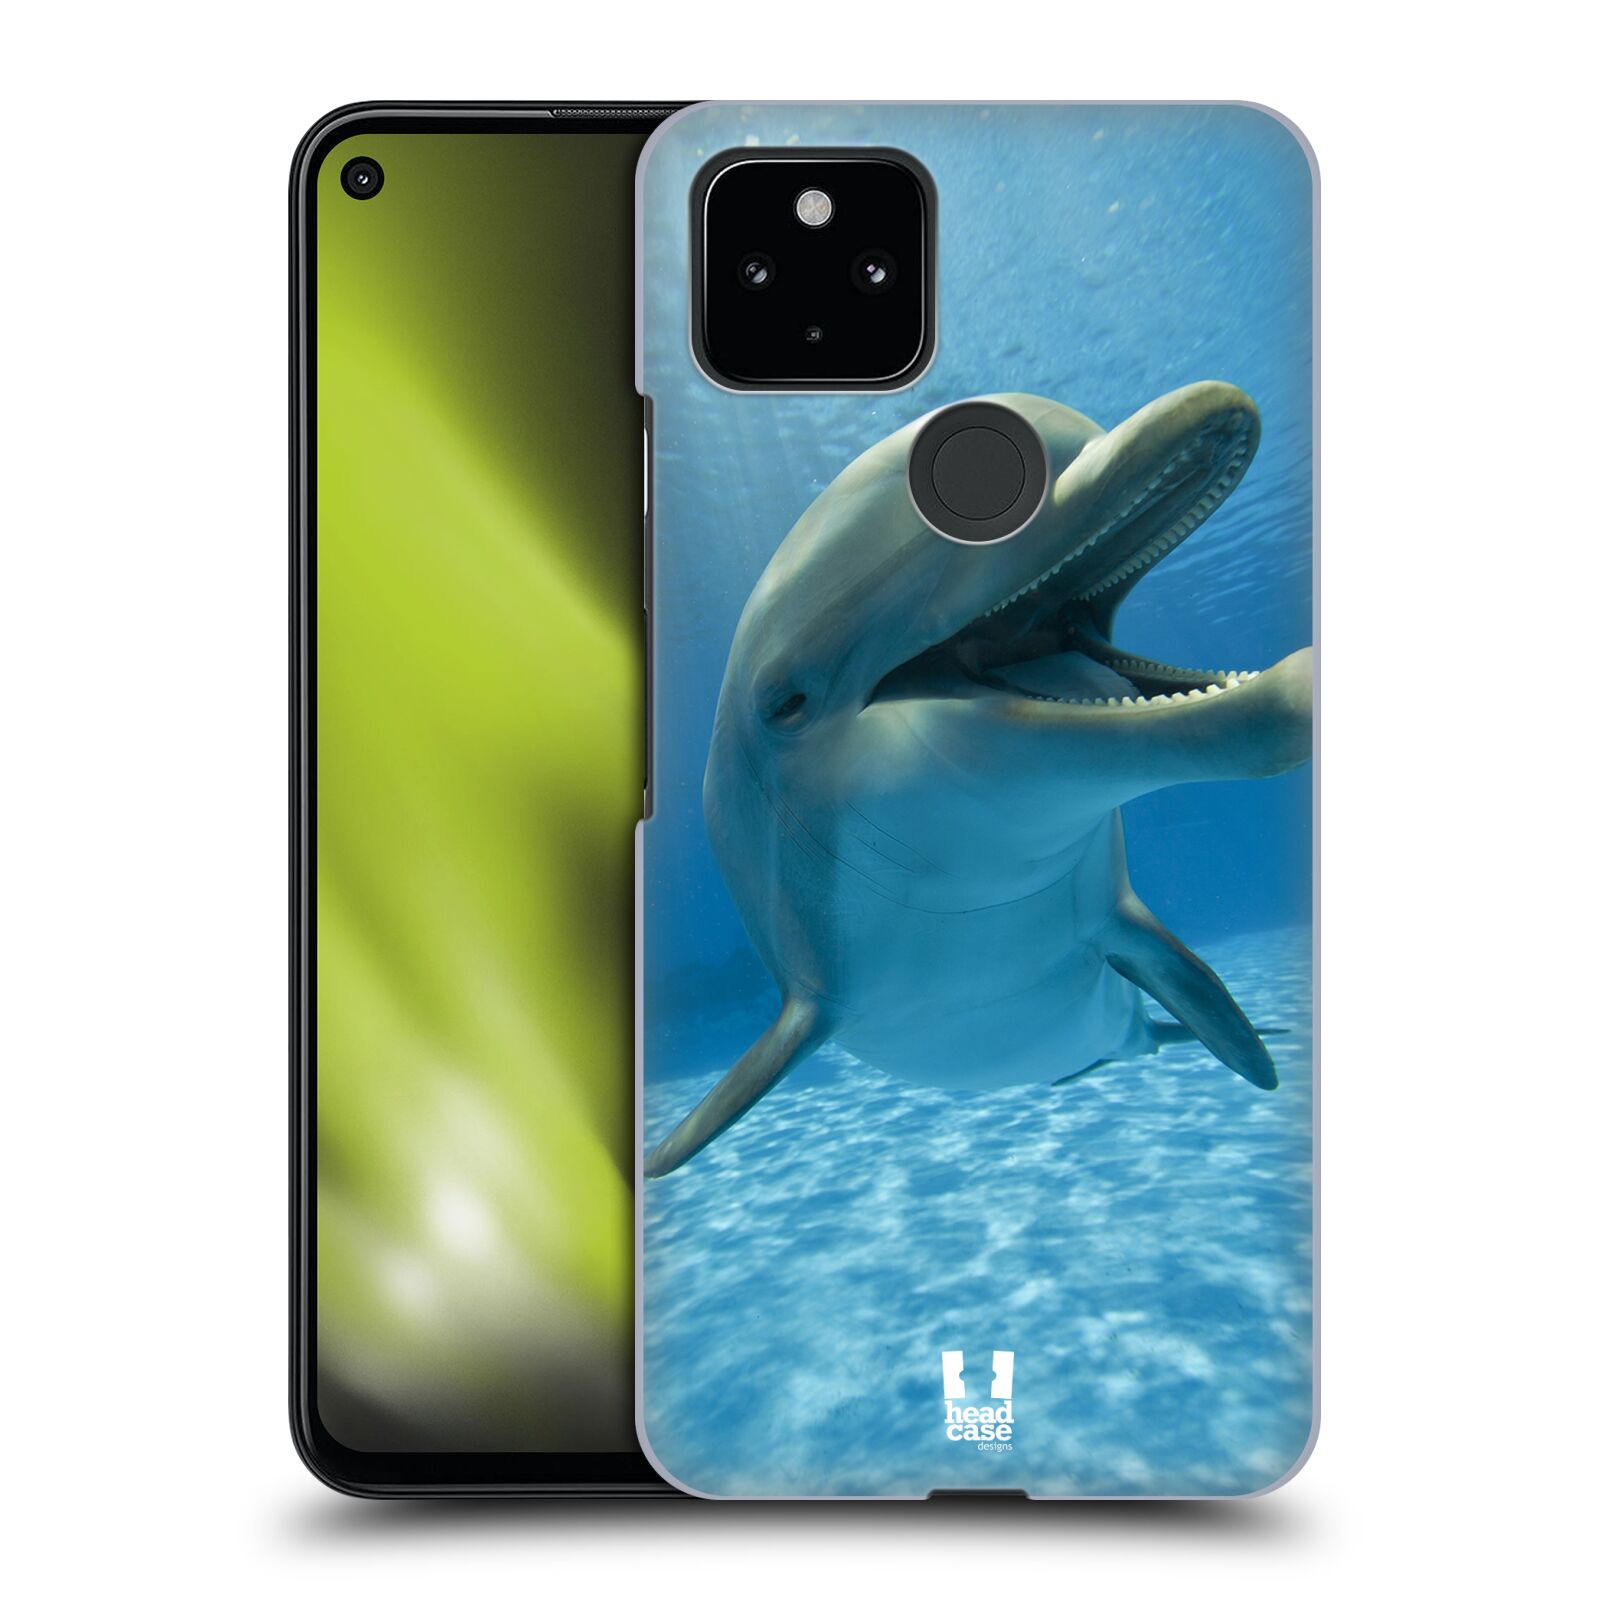 Zadní obal pro mobil Google Pixel 4a 5G - HEAD CASE - Svět zvířat delfín v moři